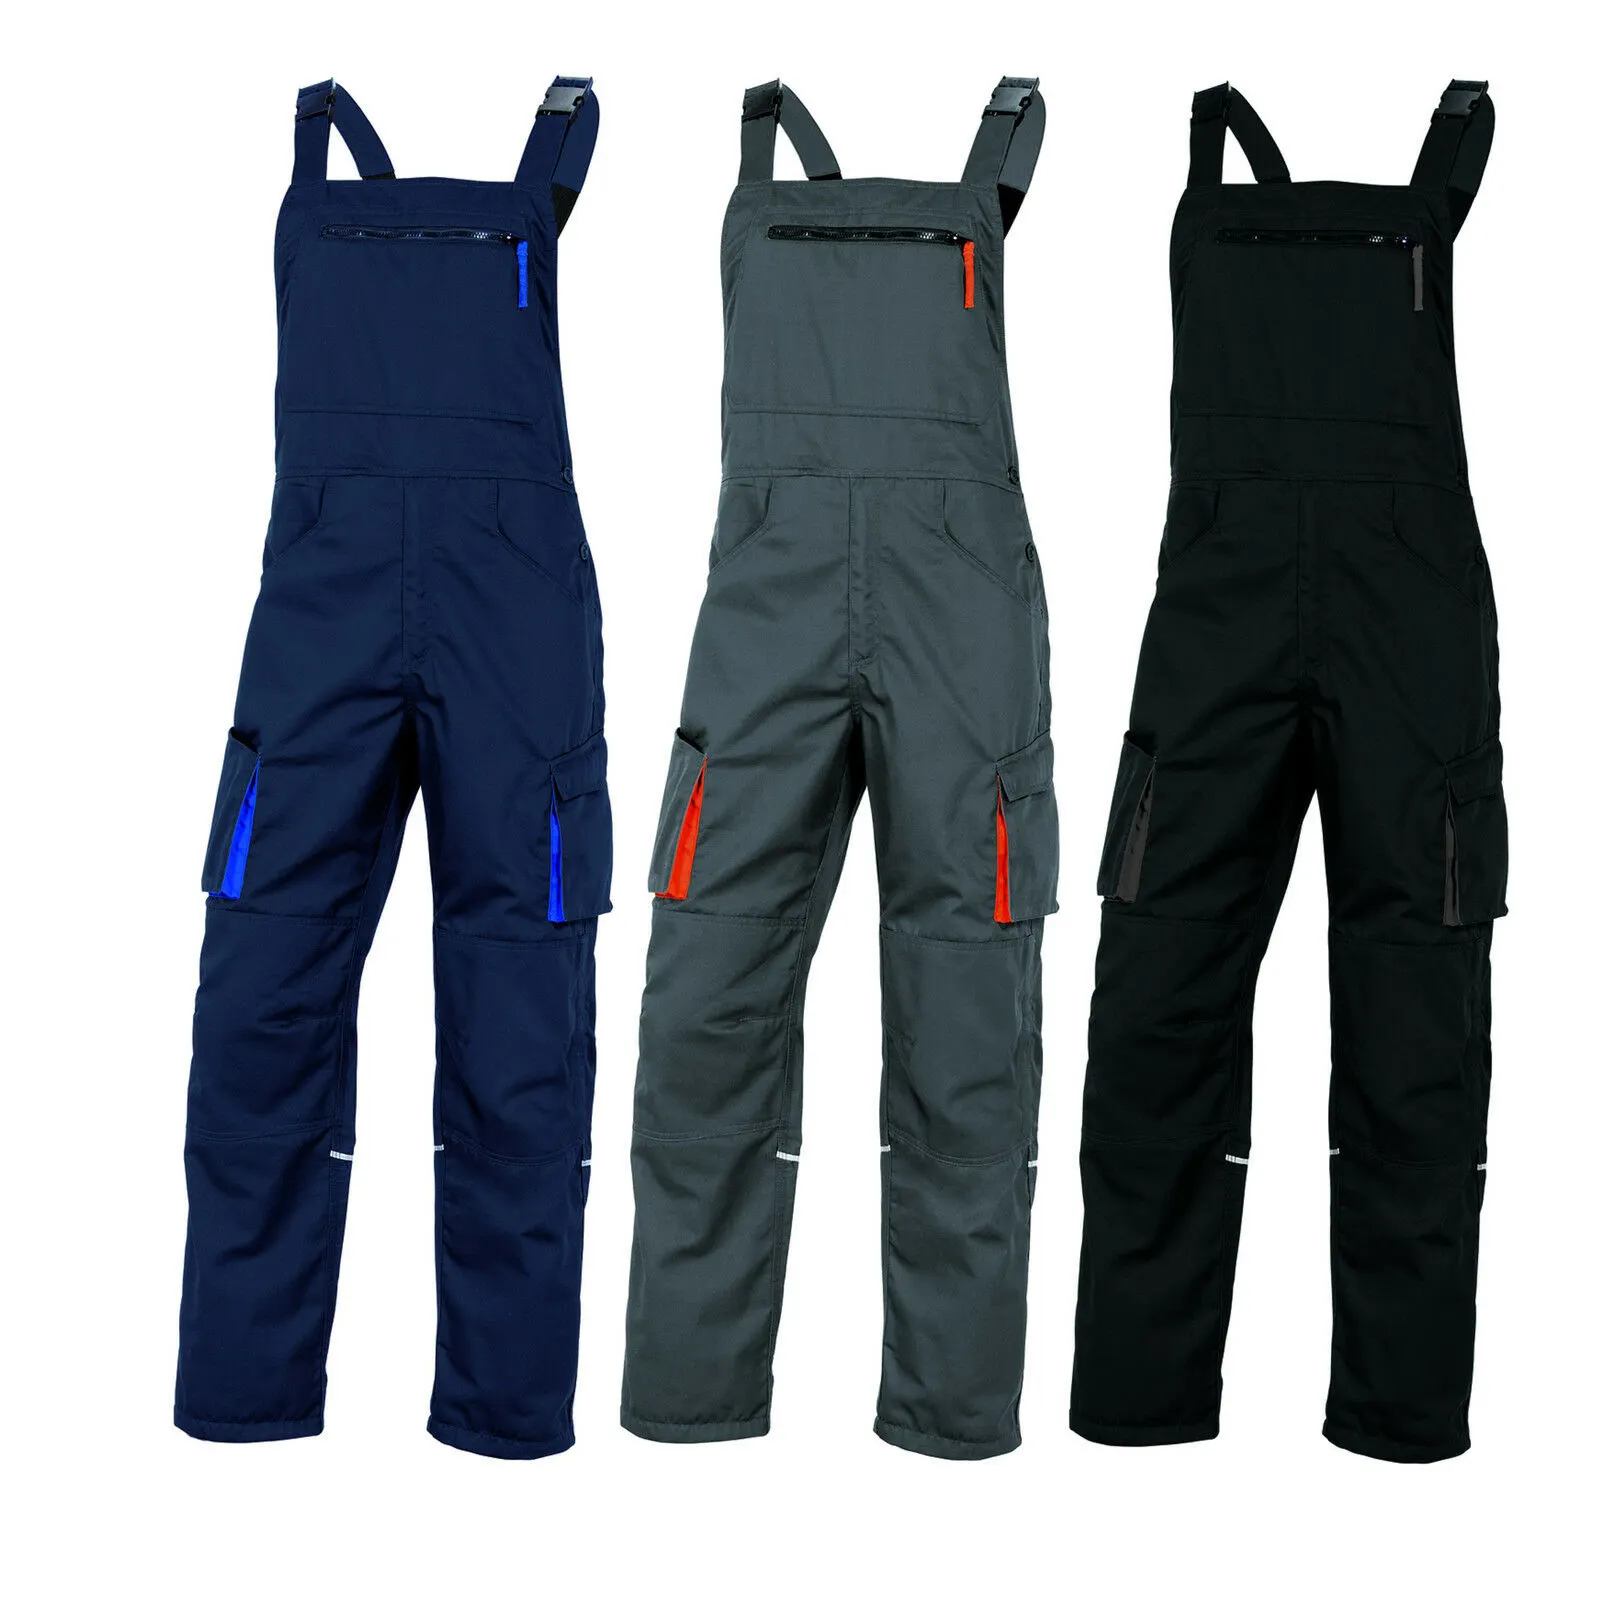 Mach 2 Baju Kerja Seragam Kerja Pria, Pakaian Kerja Overall Biru, Hitam, Abu-abu untuk Kerja Bib & Brace